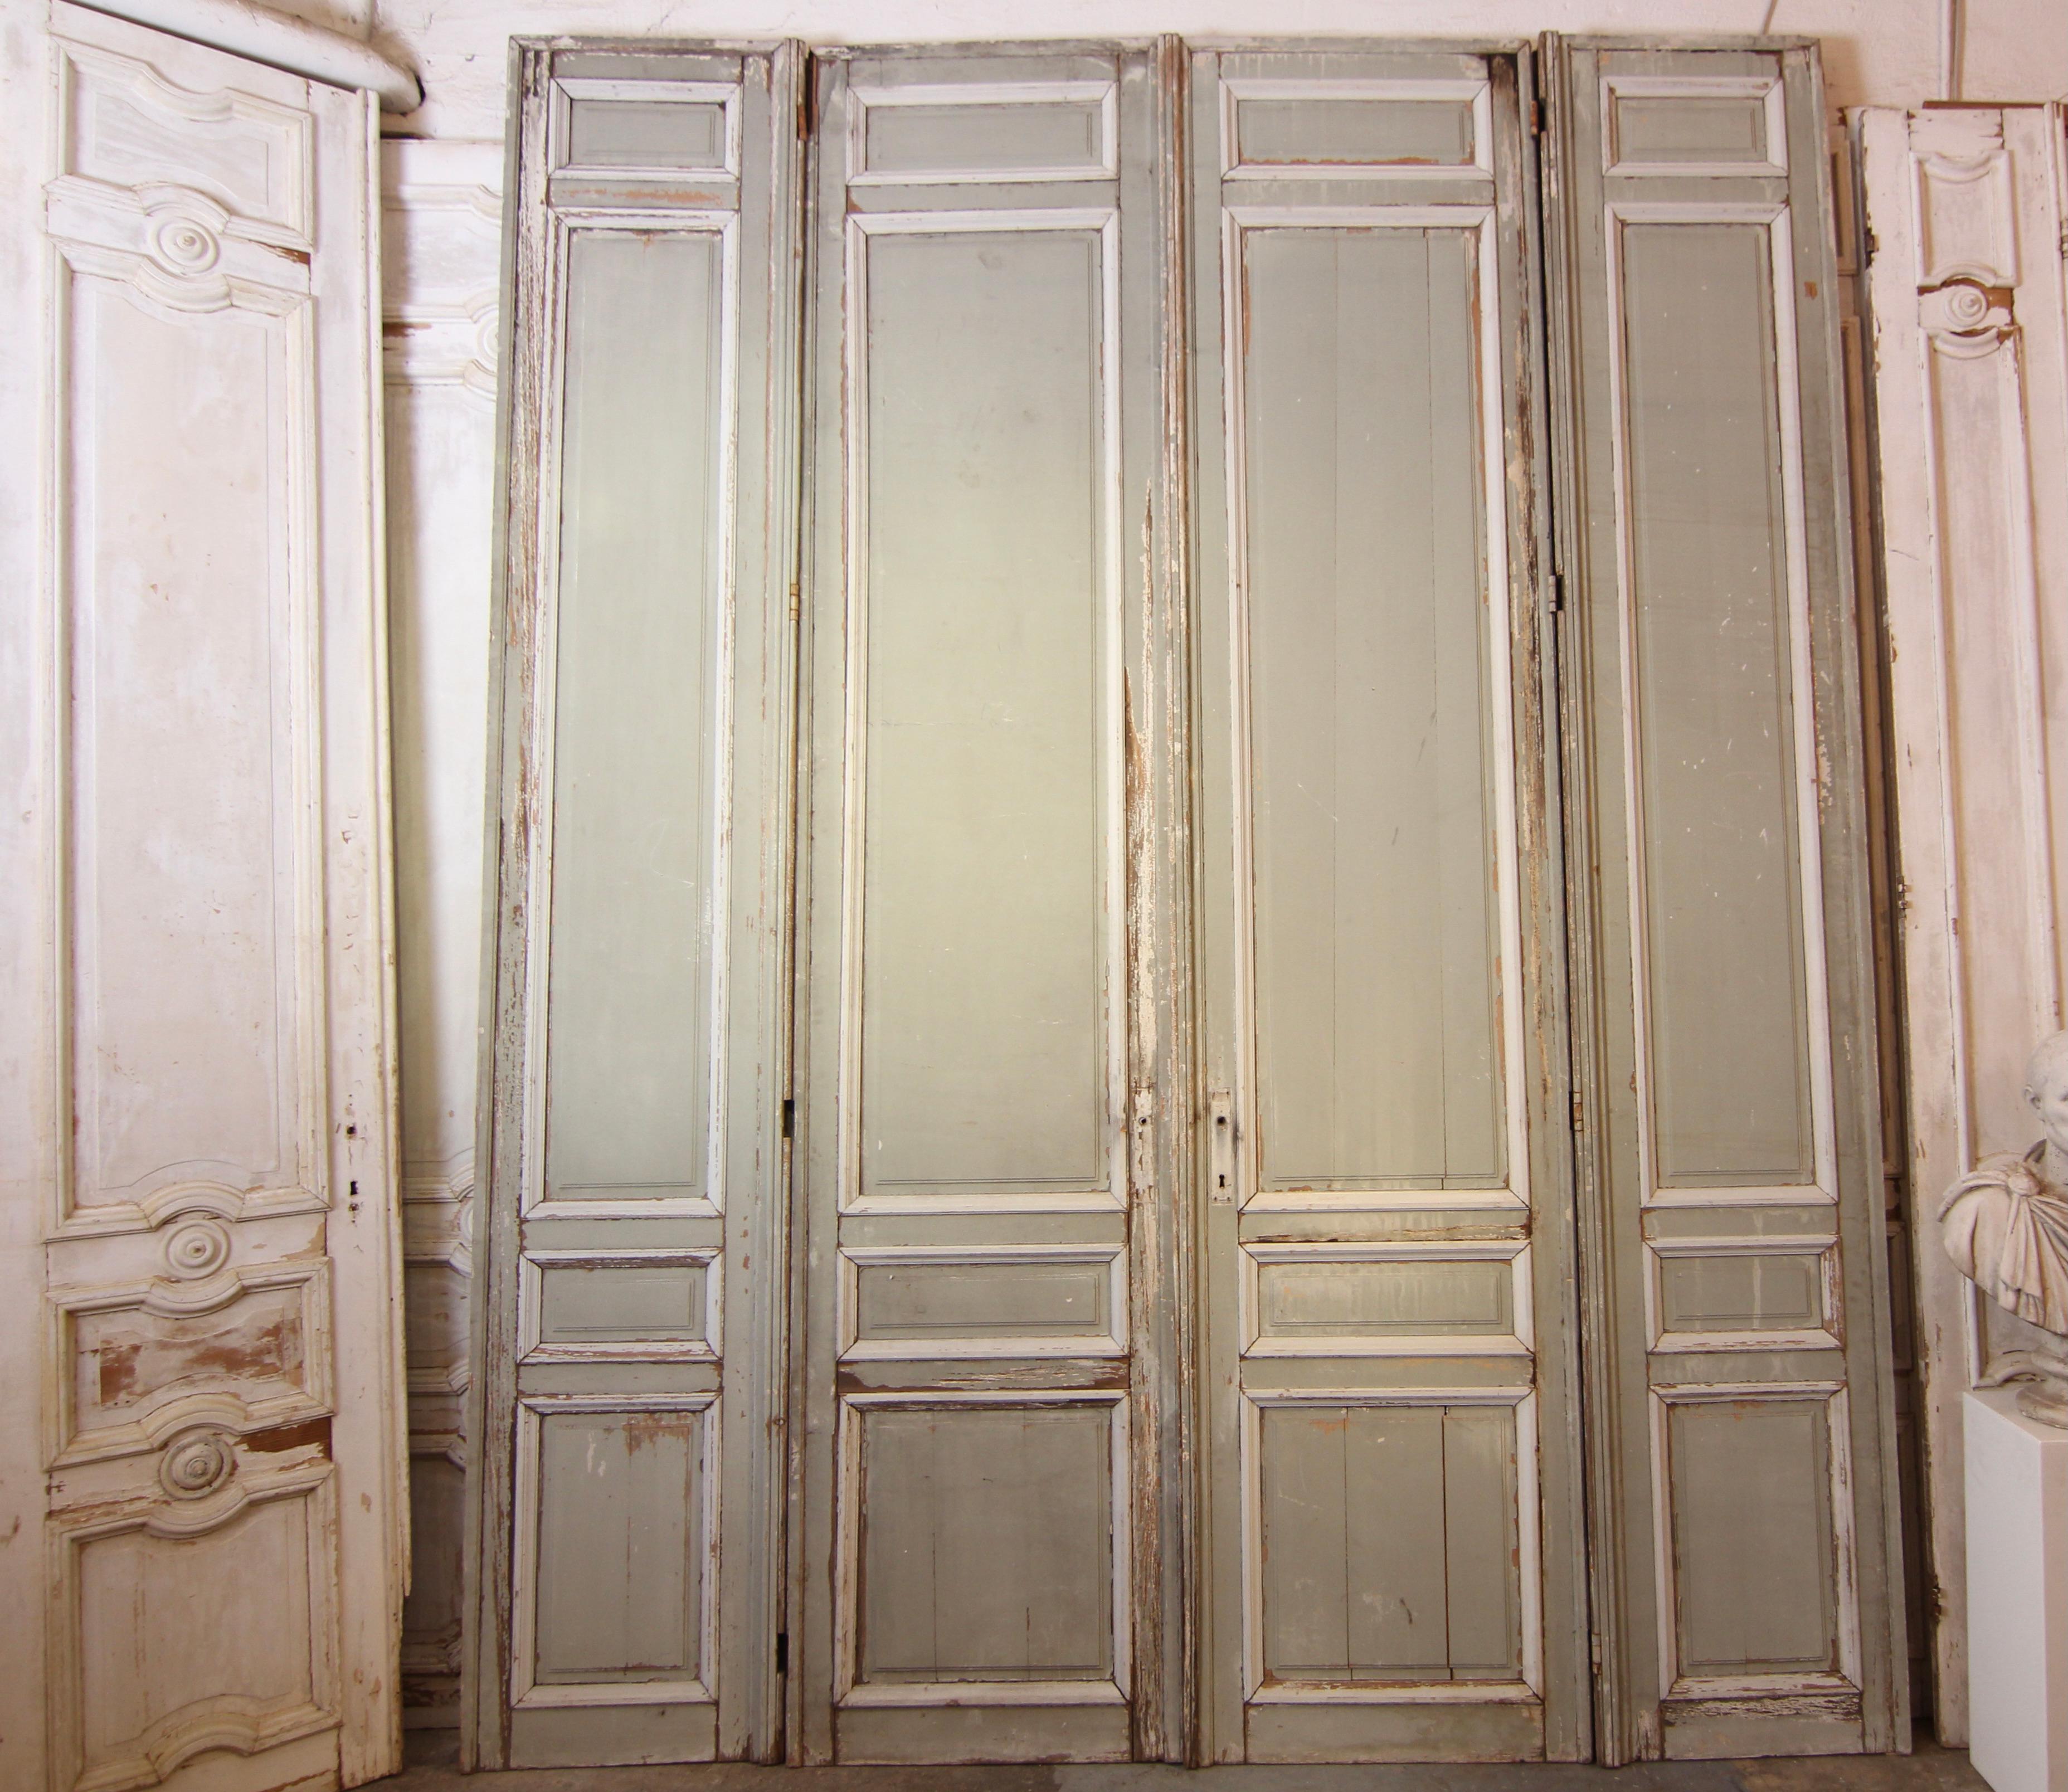 Große französische Doppeltür aus dem späten 19. Jahrhundert. Hergestellt aus massivem Kiefernholz in der Originalfarbe.

Türen in Rahmenbauweise mit je 4 Kassetten.

Sehr schöne originale Patina.

Set bestehend aus einer Doppeltür, die von 2